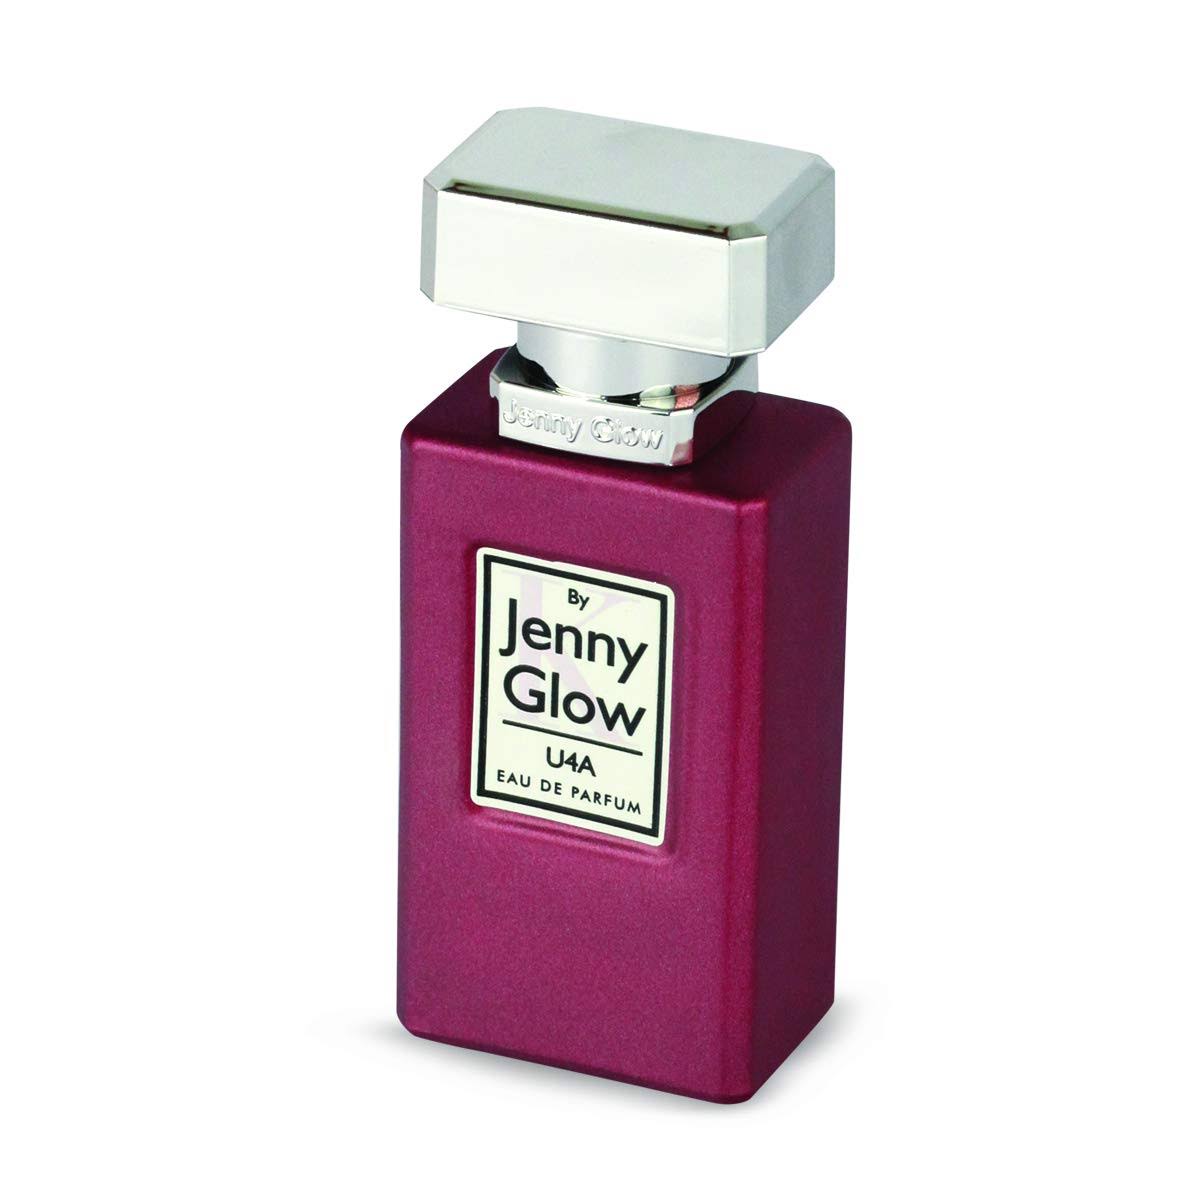 Jenny Glow U4A EDP